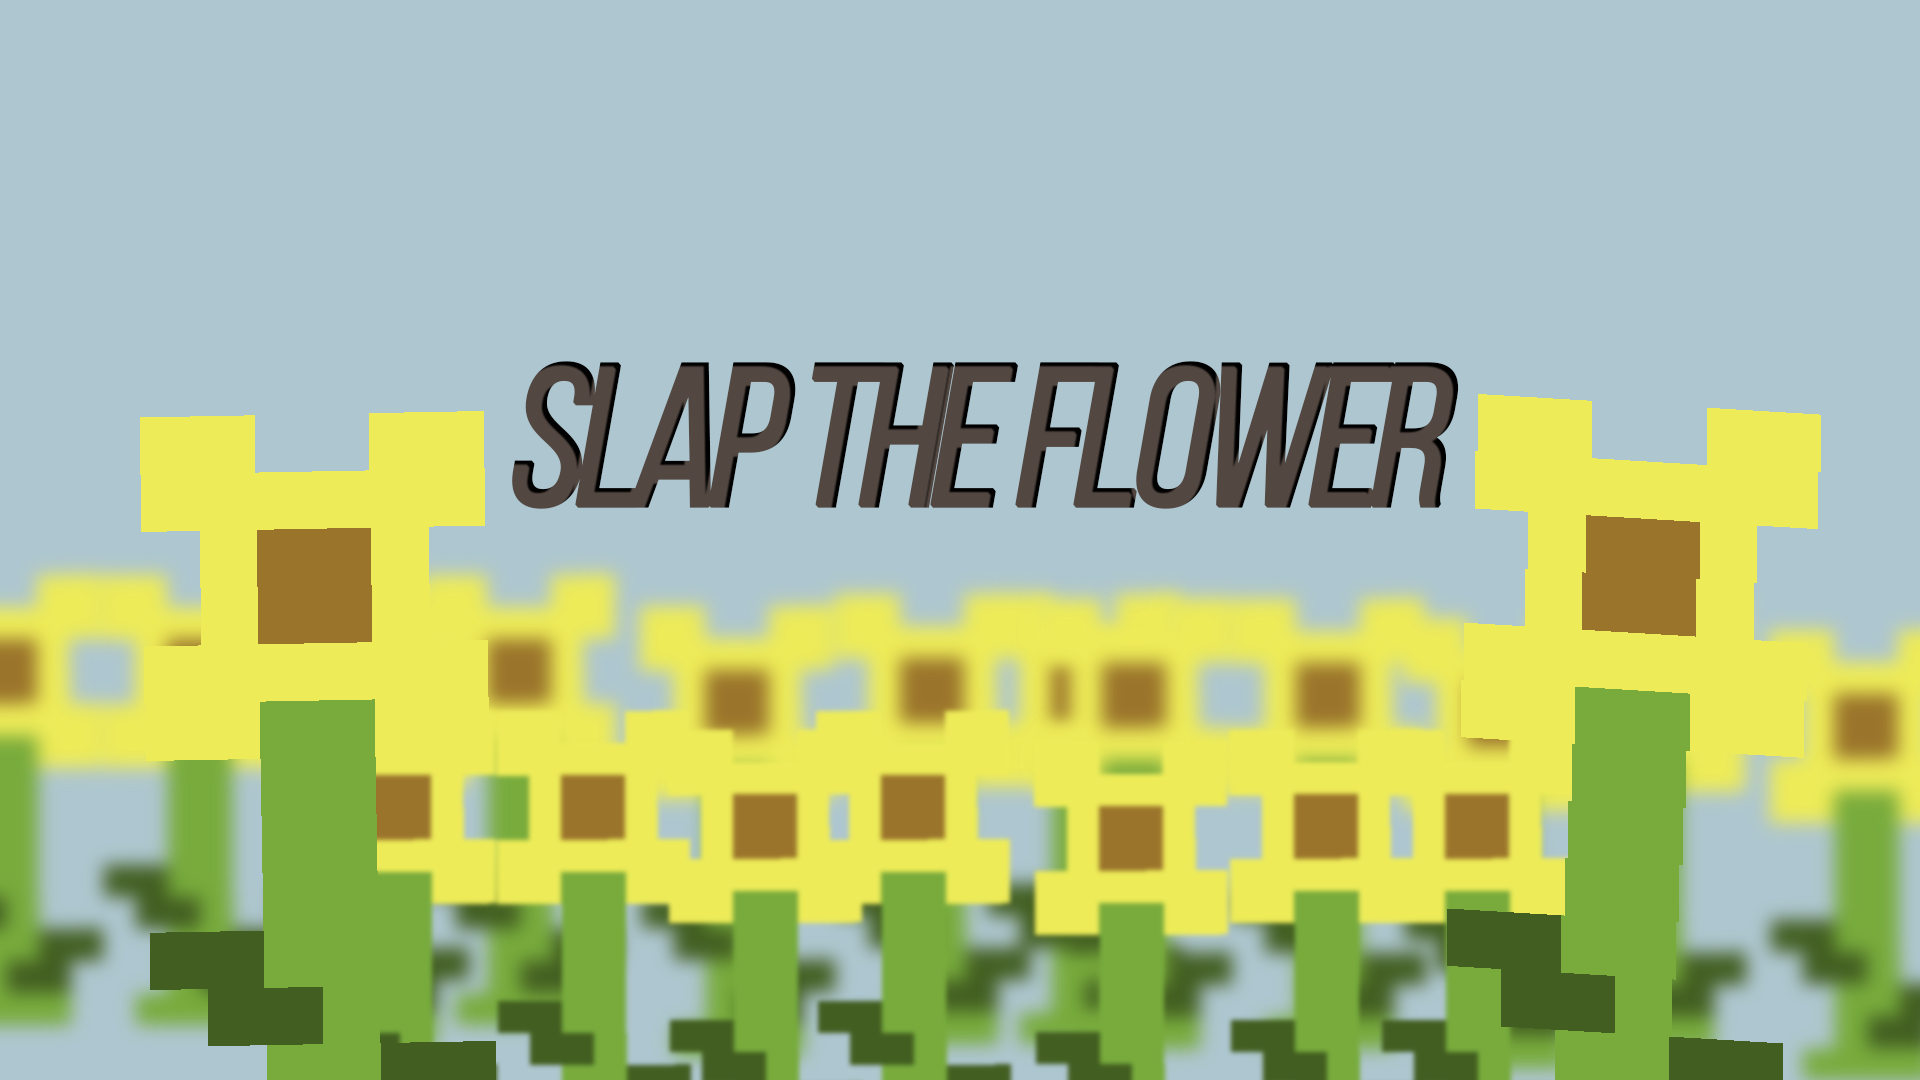 Slap the flower